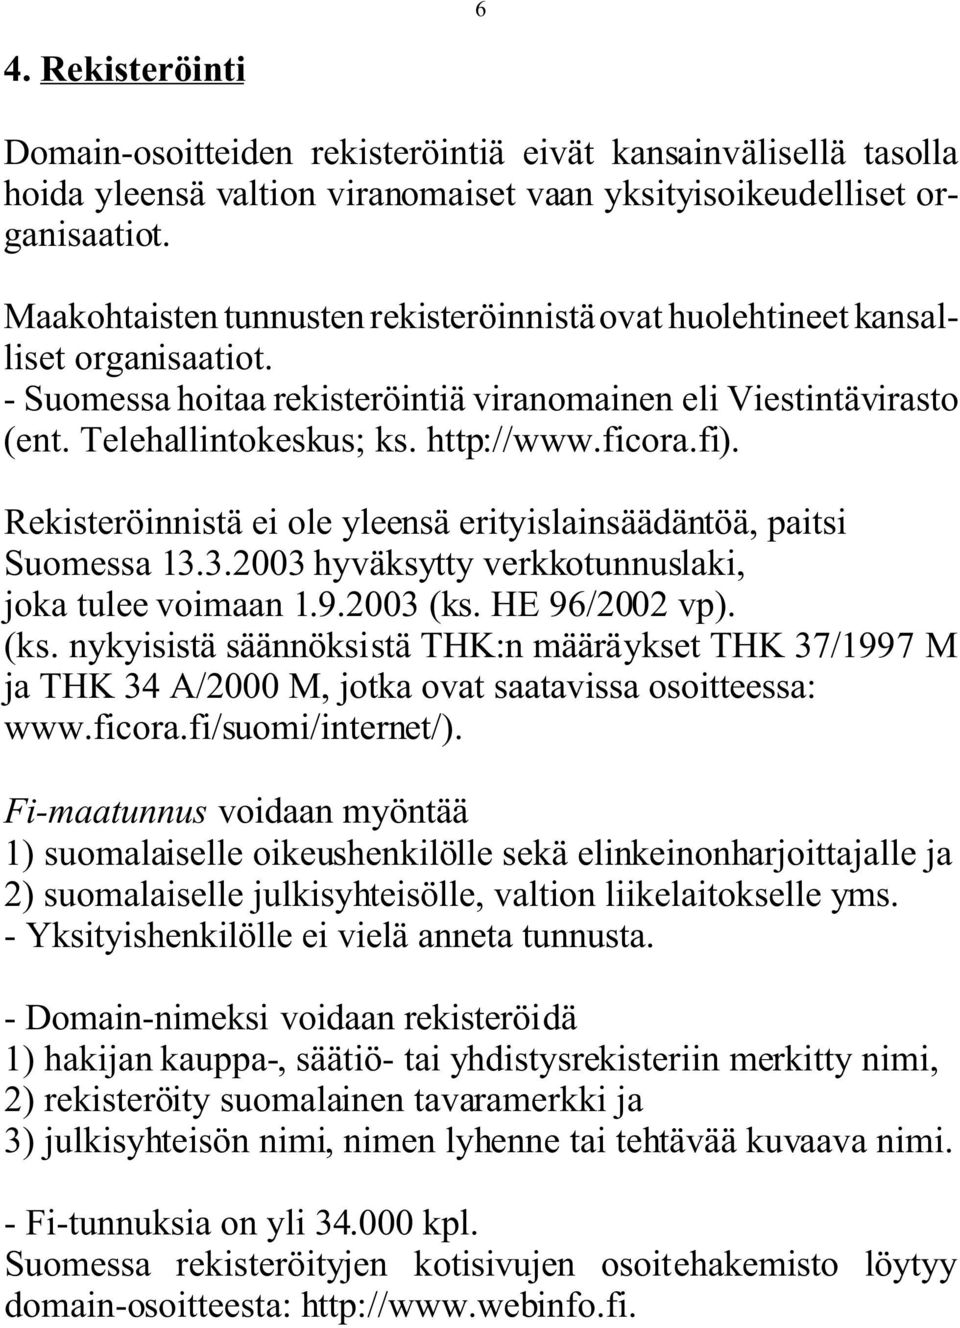 ficora.fi). Rekisteröinnistä ei ole yleensä erityislainsäädäntöä, paitsi Suomessa 13.3.2003 hyväksytty verkkotunnuslaki, joka tulee voimaan 1.9.2003 (ks.